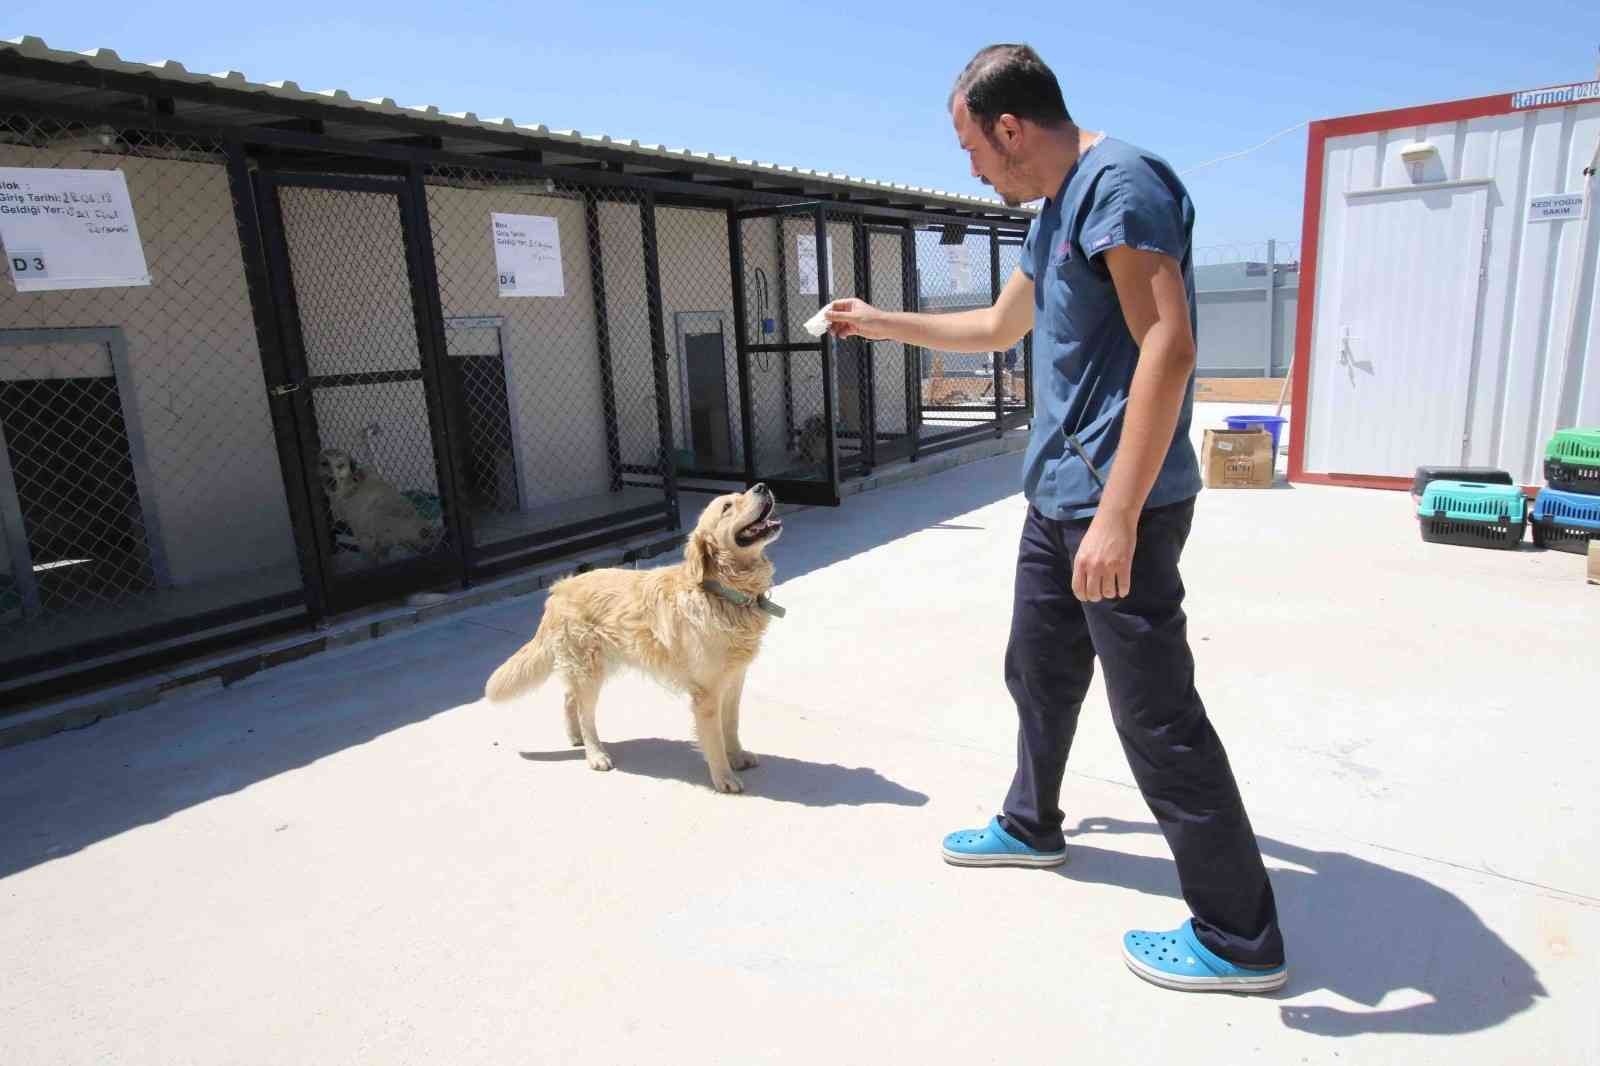 Bayraklı Belediyesi 1 yılda 4 bin 740 sokak hayvanına sağlık hizmeti verdi #izmir